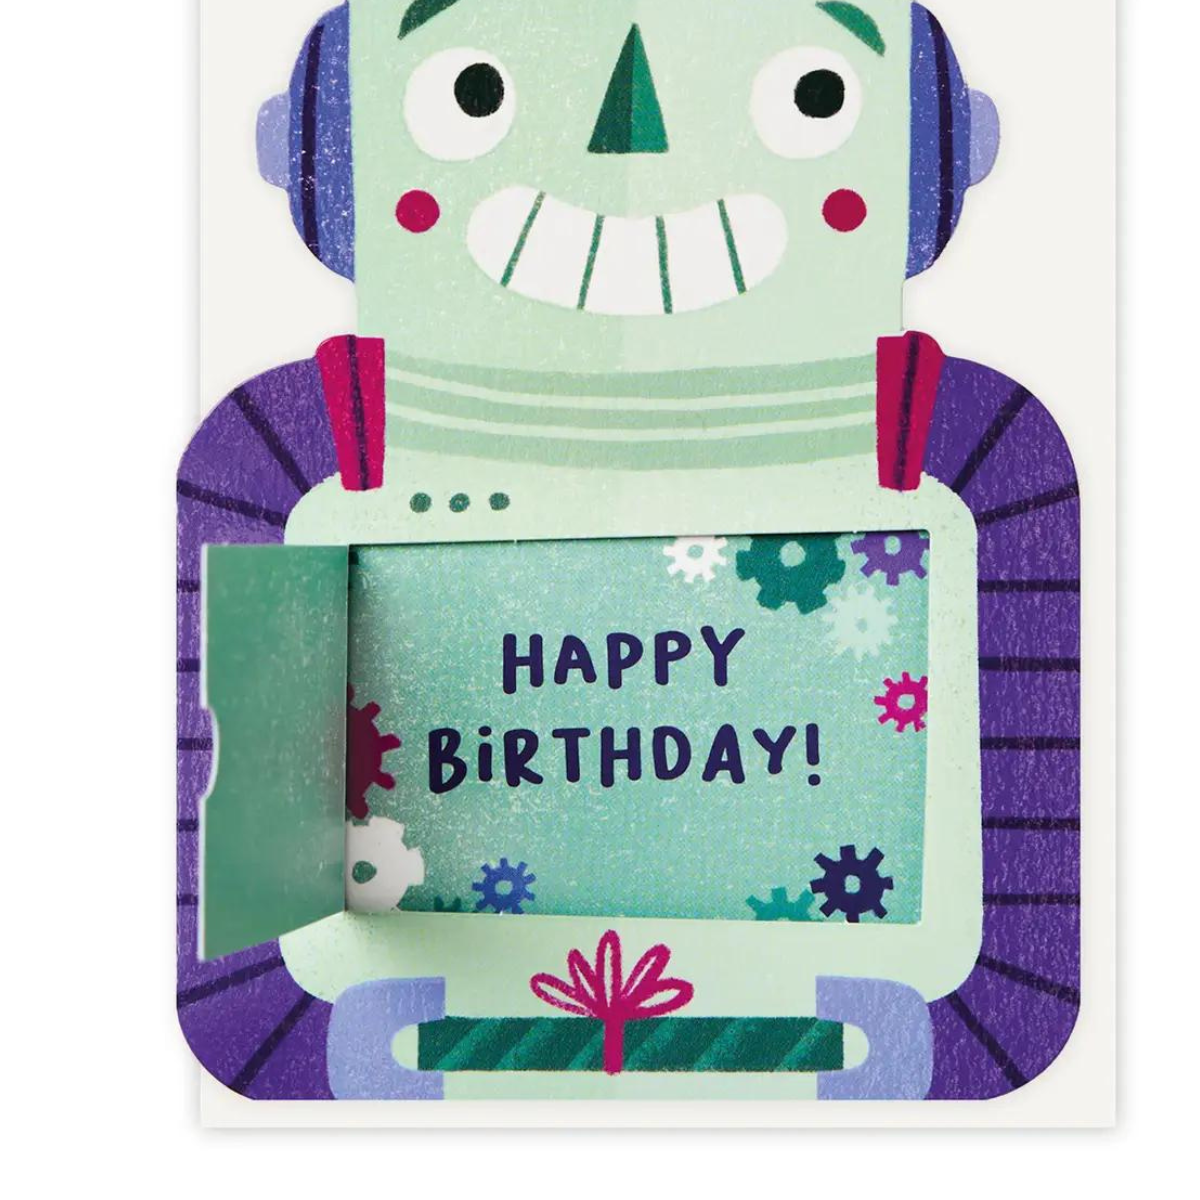 Cette carte ludique et créative présente un adorable robot en relief, dont le ventre s'ouvre pour révéler un message spécial « Happy Birthday ». 